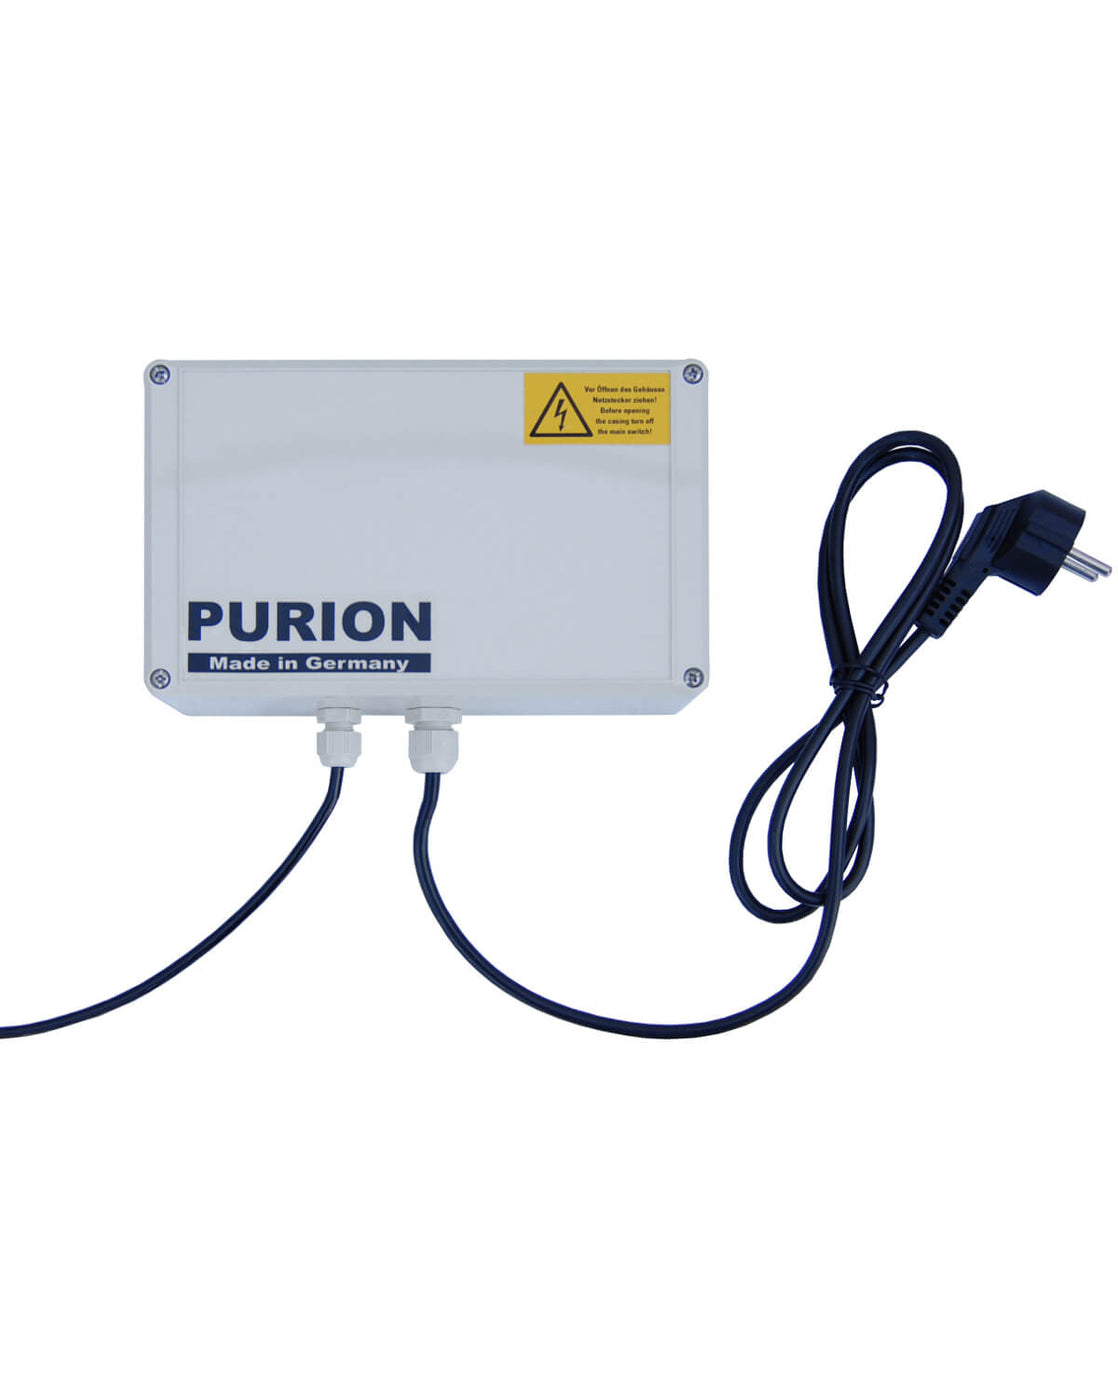 Der PURION 1000 PRO Basic der PURION GmbH nutzt die UV-C-Licht-Technologie zur effizienten Desinfektion.